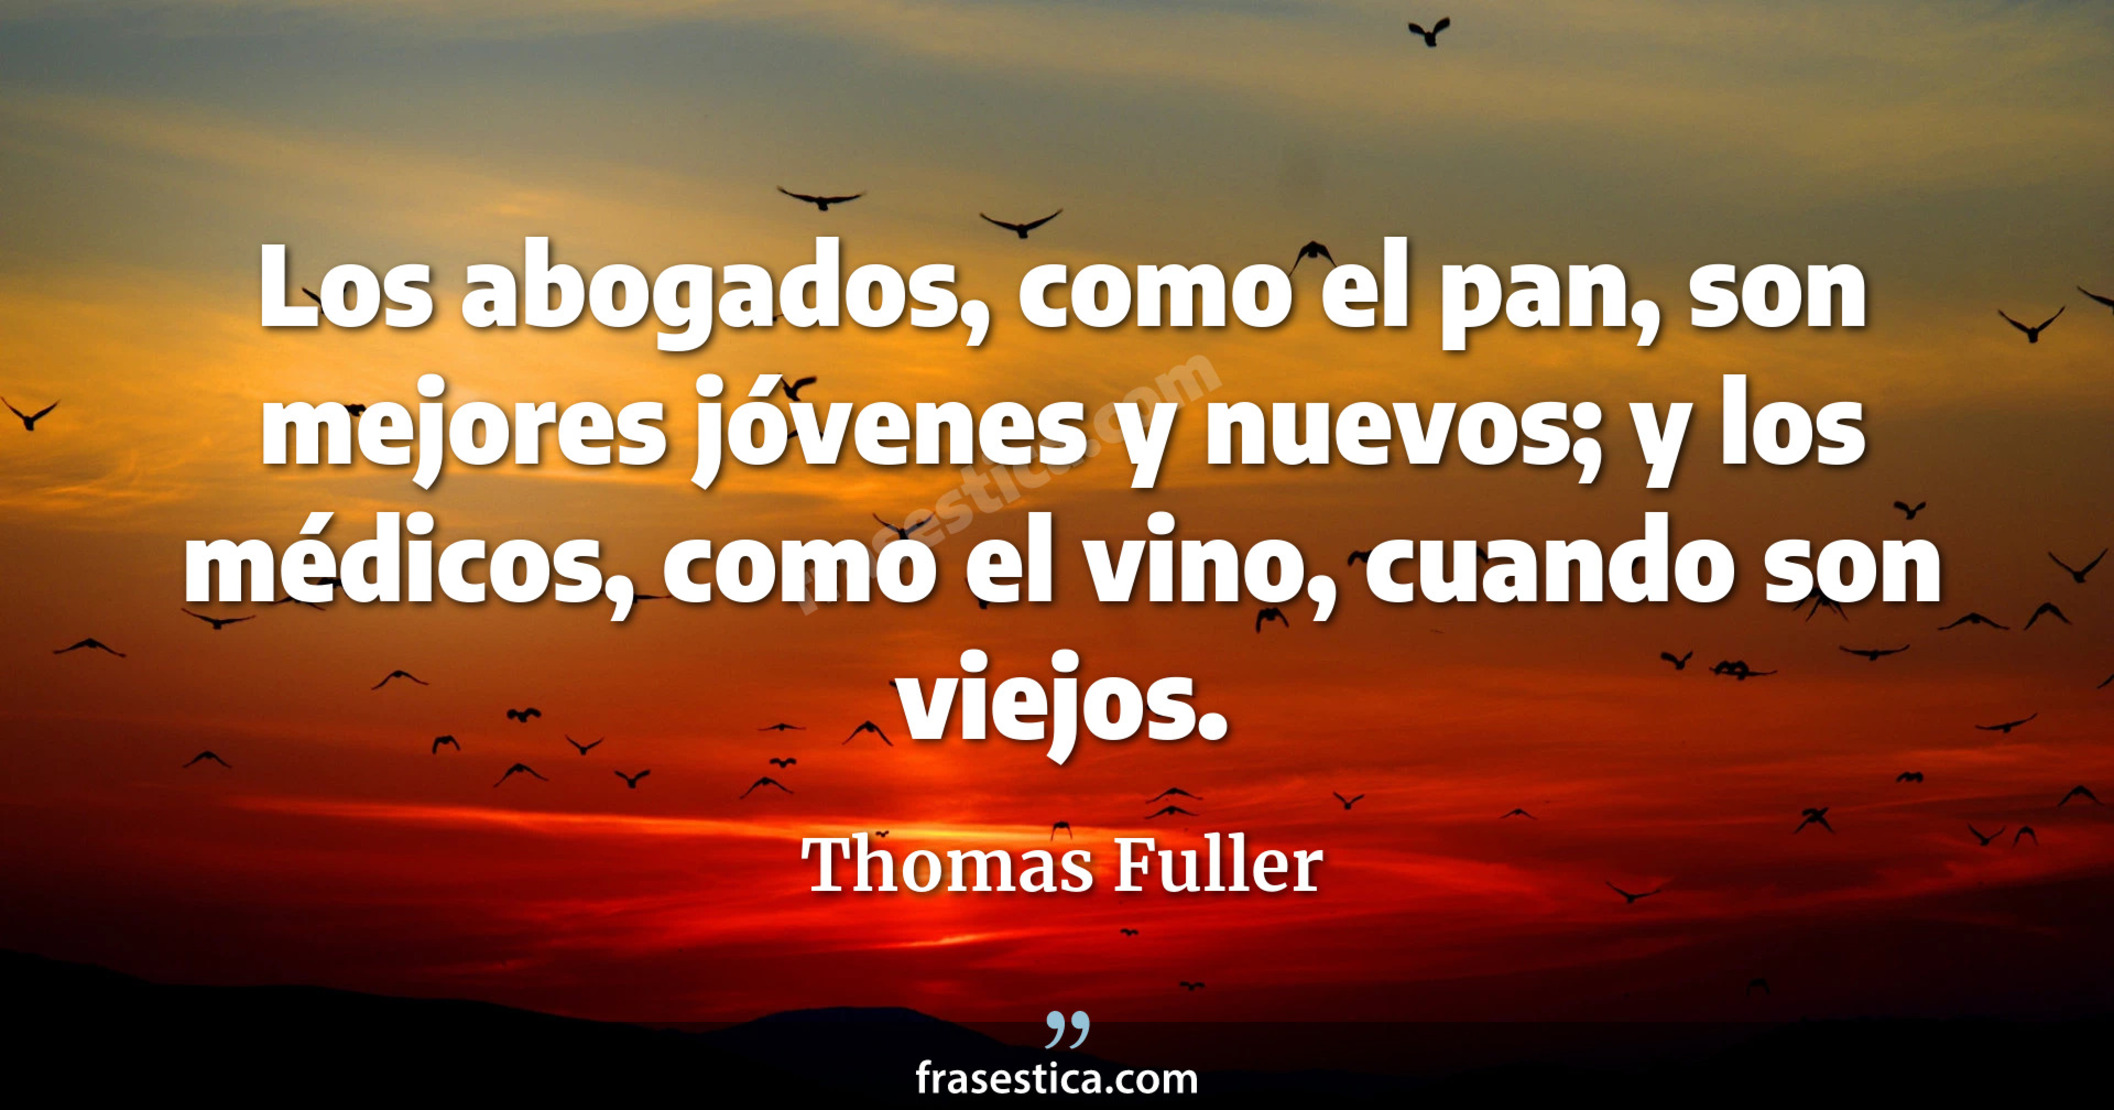 Los abogados, como el pan, son mejores jóvenes y nuevos; y los médicos, como el vino, cuando son viejos. - Thomas Fuller